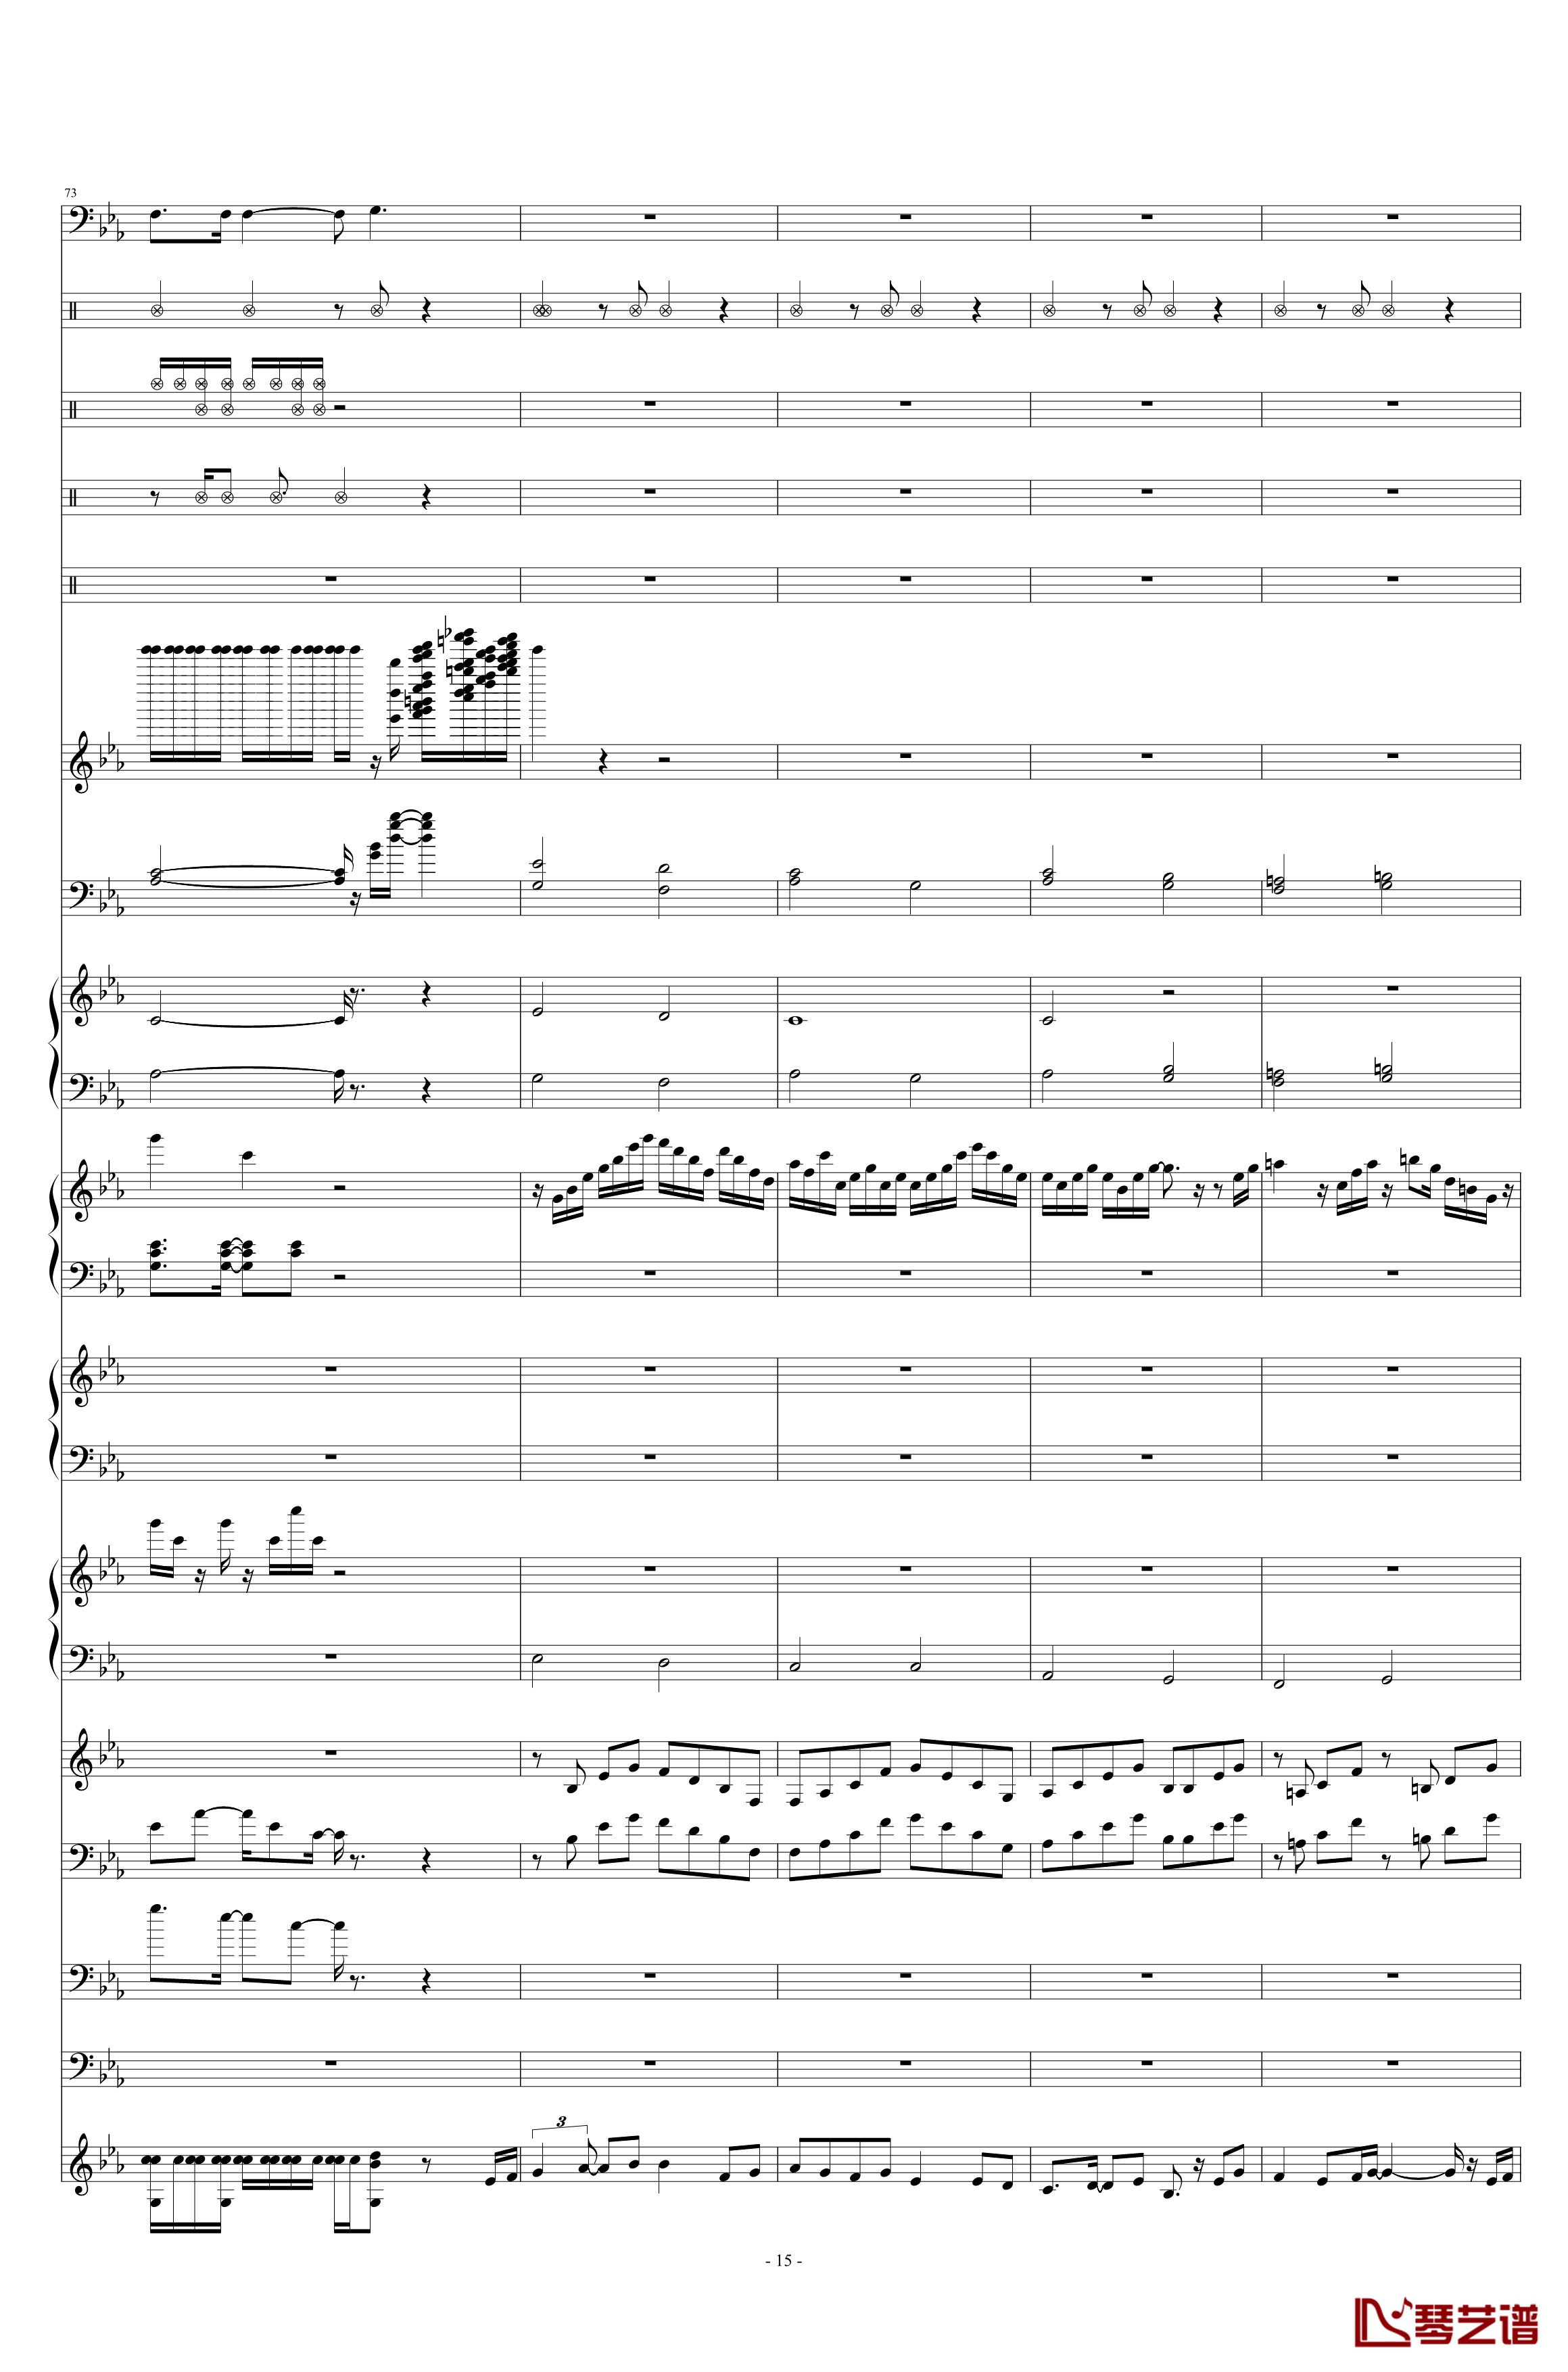 碧绿色的兔子钢琴谱-总谱-酒井法子15